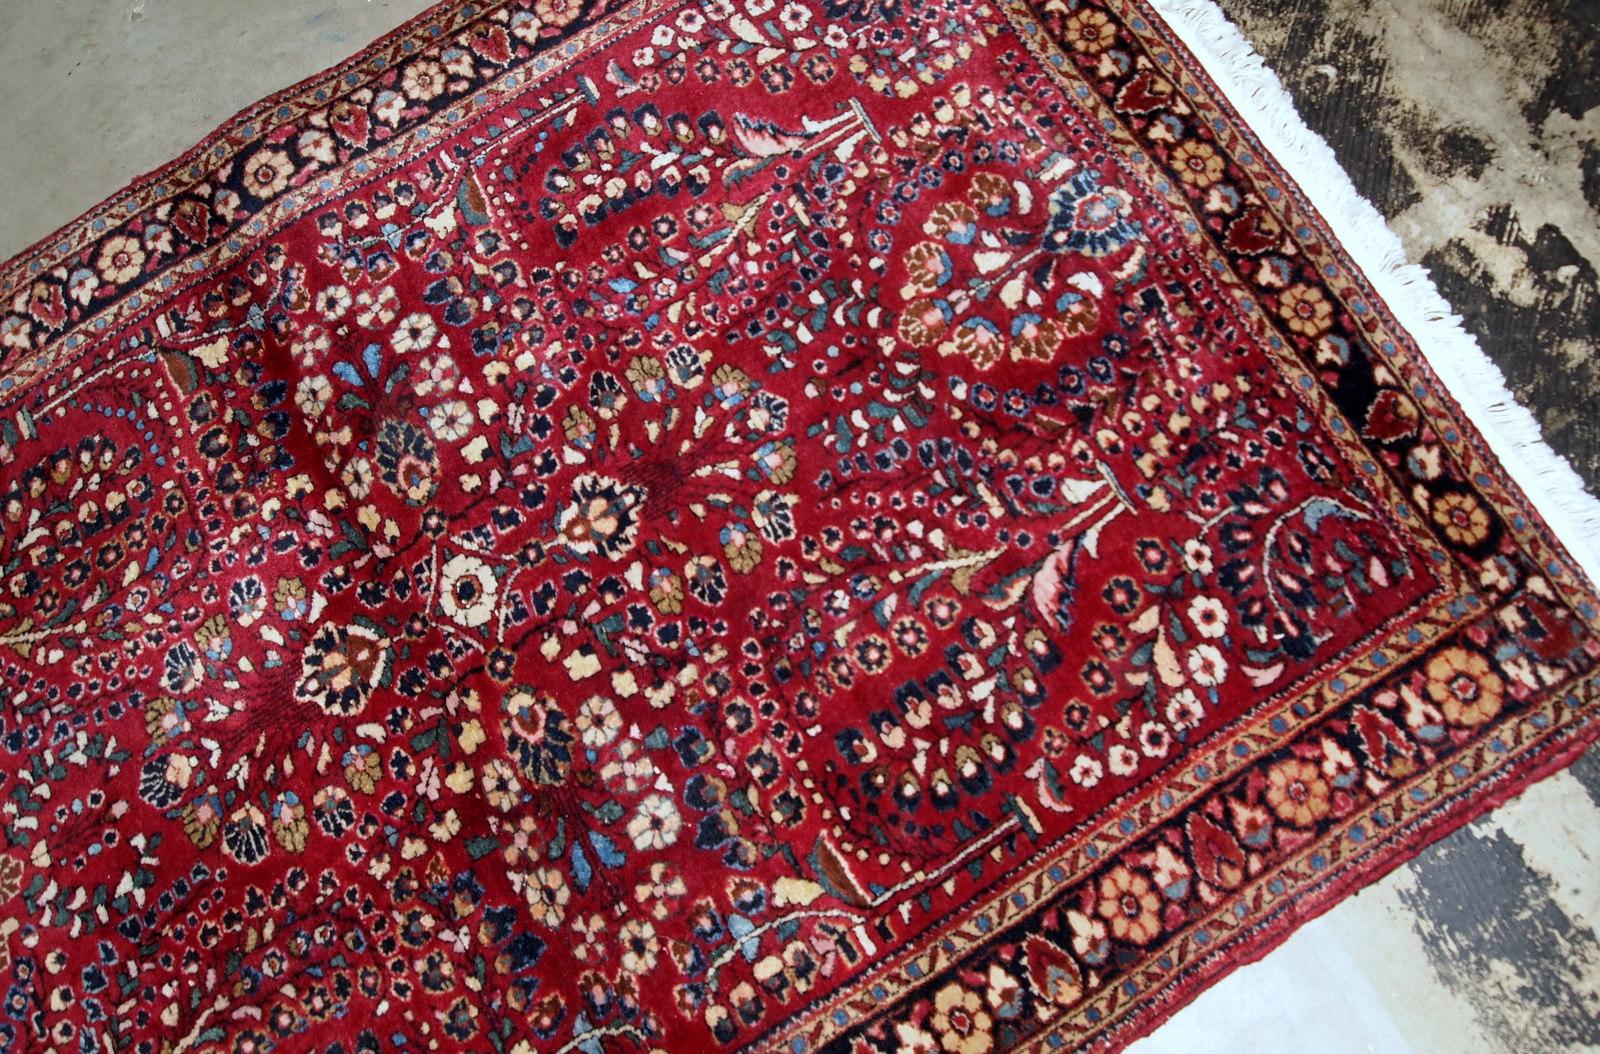 Handgefertigter antiker Sarouk-Teppich in leuchtender roter Farbe. Der Teppich ist in einem guten Originalzustand vom Anfang des 20. Jahrhunderts.

?-Zustand: original gut,

-um: 1920er Jahre,

-größe: 3,2' x 5,3' (97cm x 151cm),

-material: